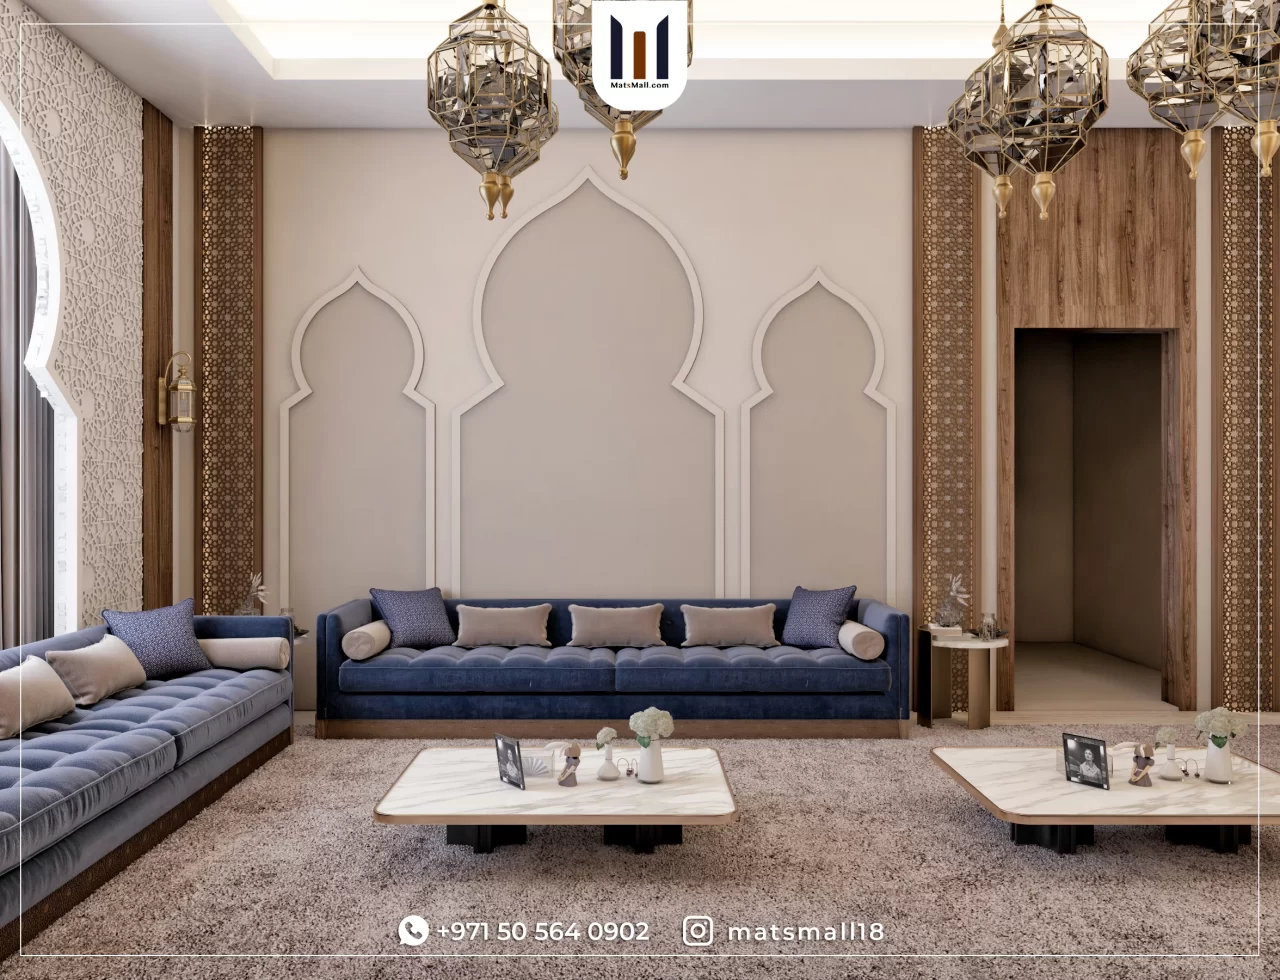 ancient islamic interior design